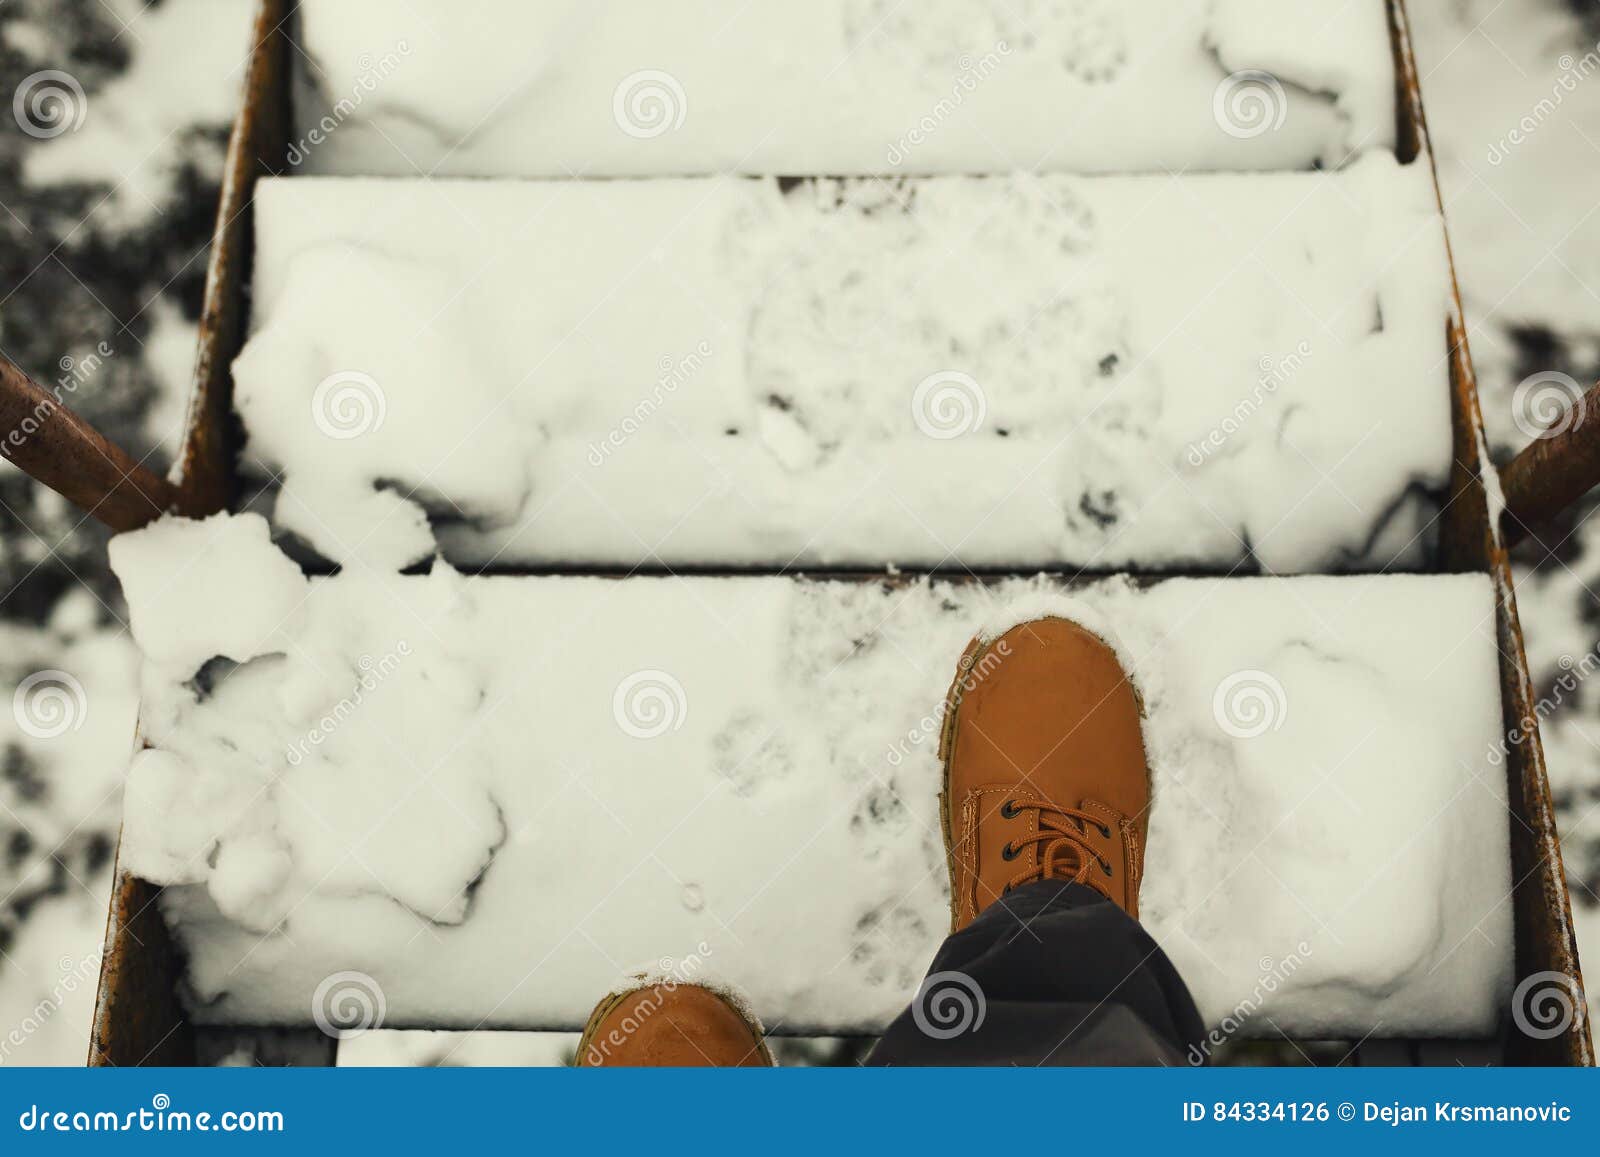 on stairways during winter